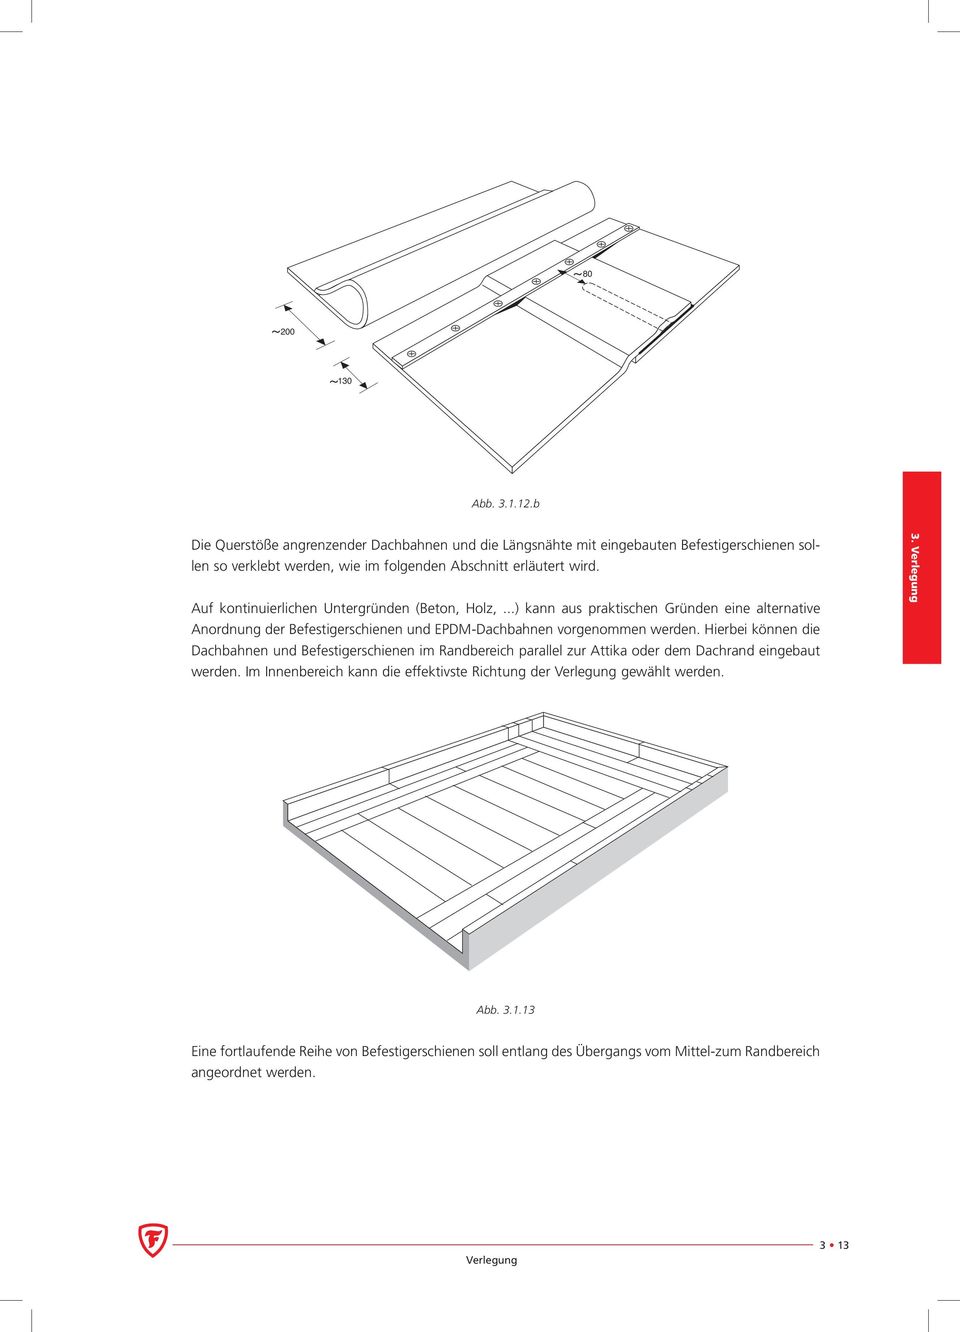 Auf kontinuierlichen Untergründen (Beton, Holz,...) kann aus praktischen Gründen eine alternative Anordnung der Befestigerschienen und EPDM-Dachbahnen vorgenommen werden.